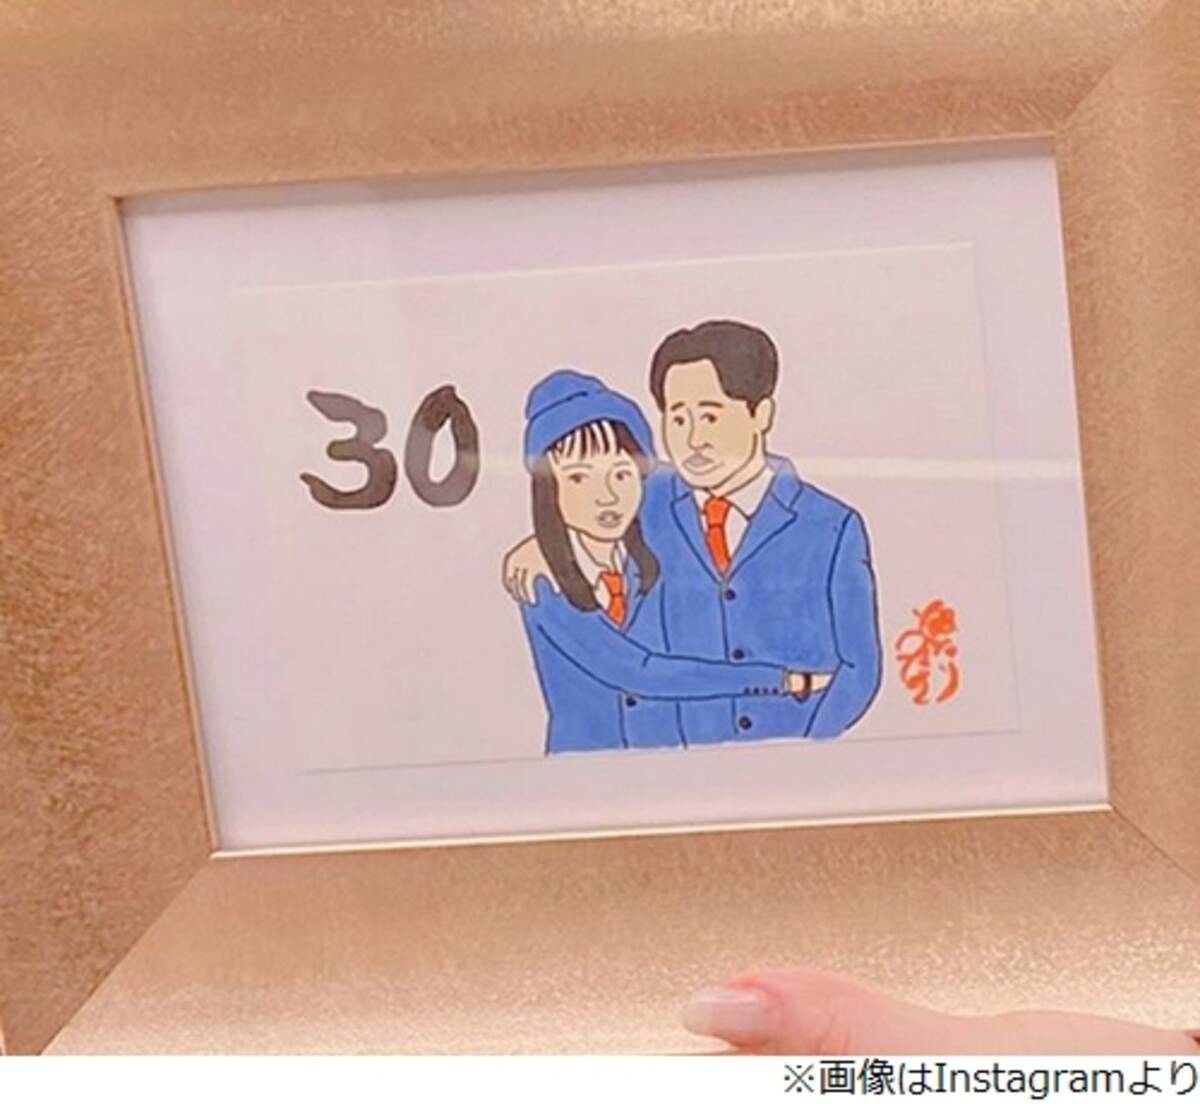 小川菜摘 浜田雅功が結婚30周年 銀シャリ鰻の贈り物に感激 2019年10